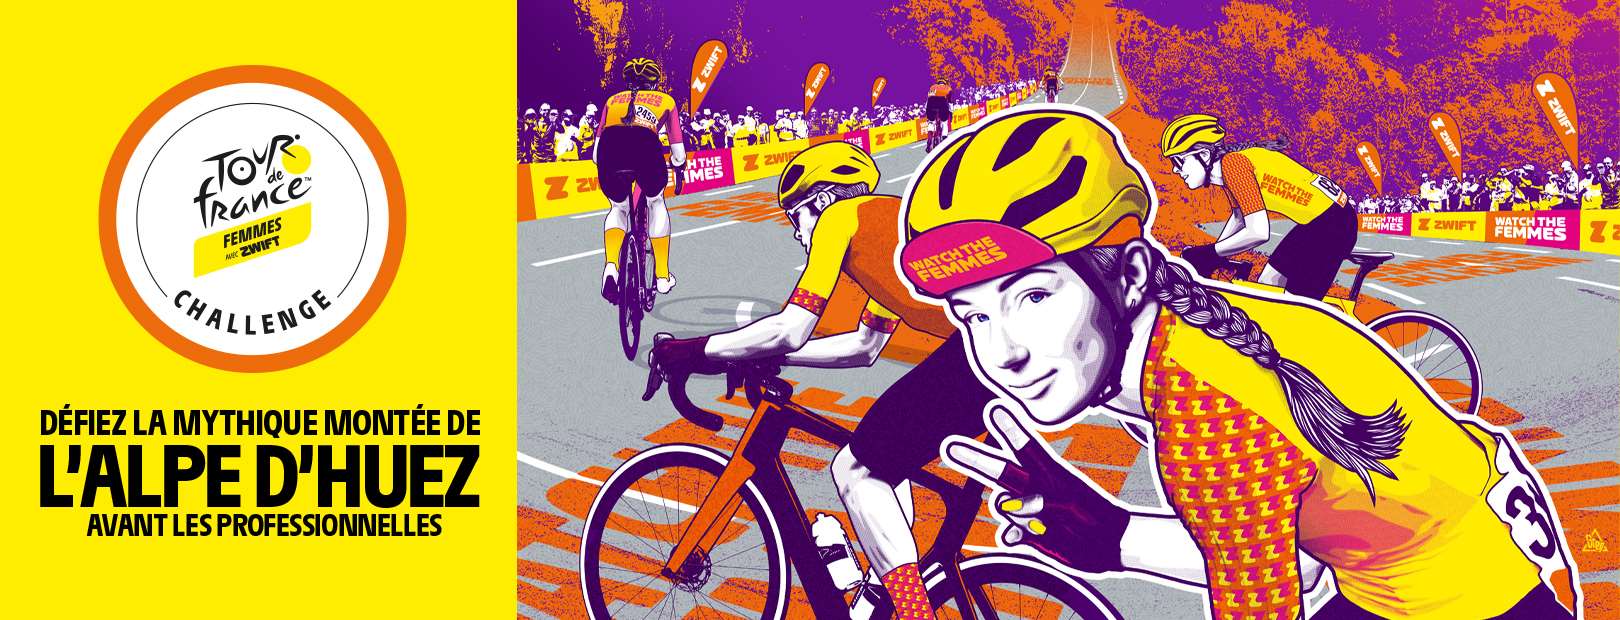 Tour de France Femmes avec Zwift Challenge